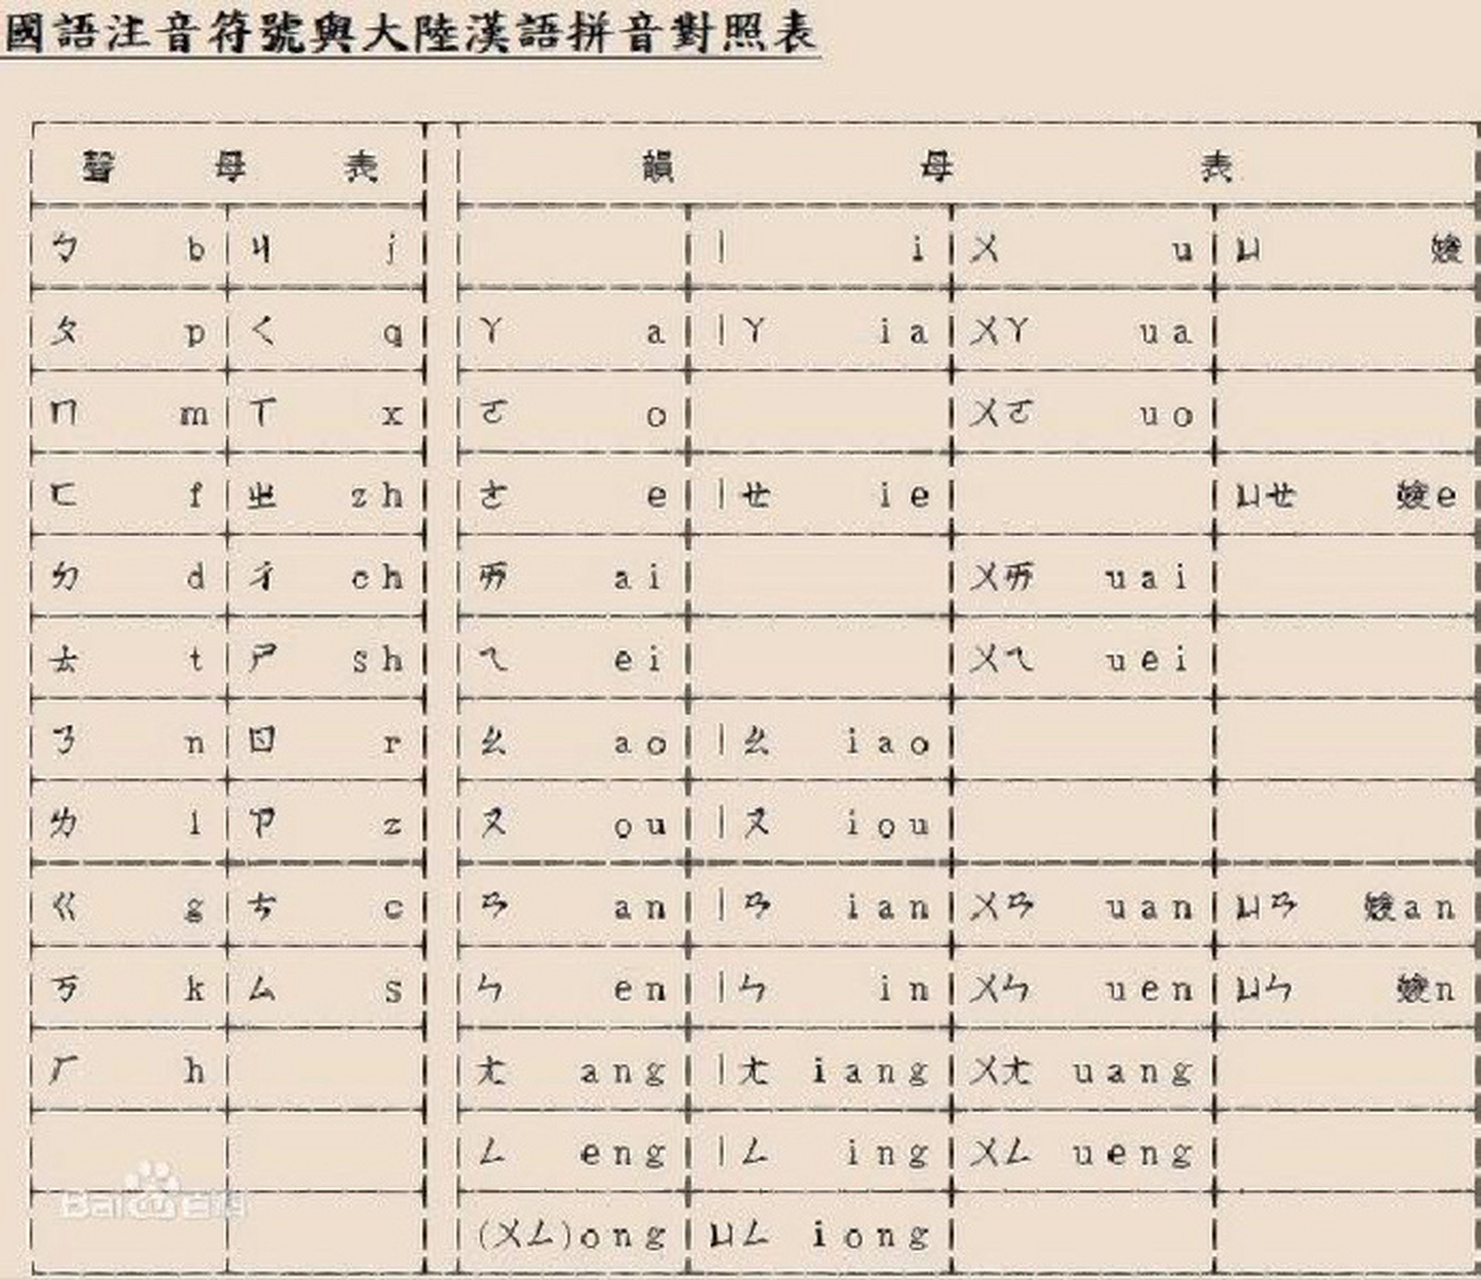 拼音生前原来是注音符号01 汉语注音符号(chinese zhuyin),简称汉语